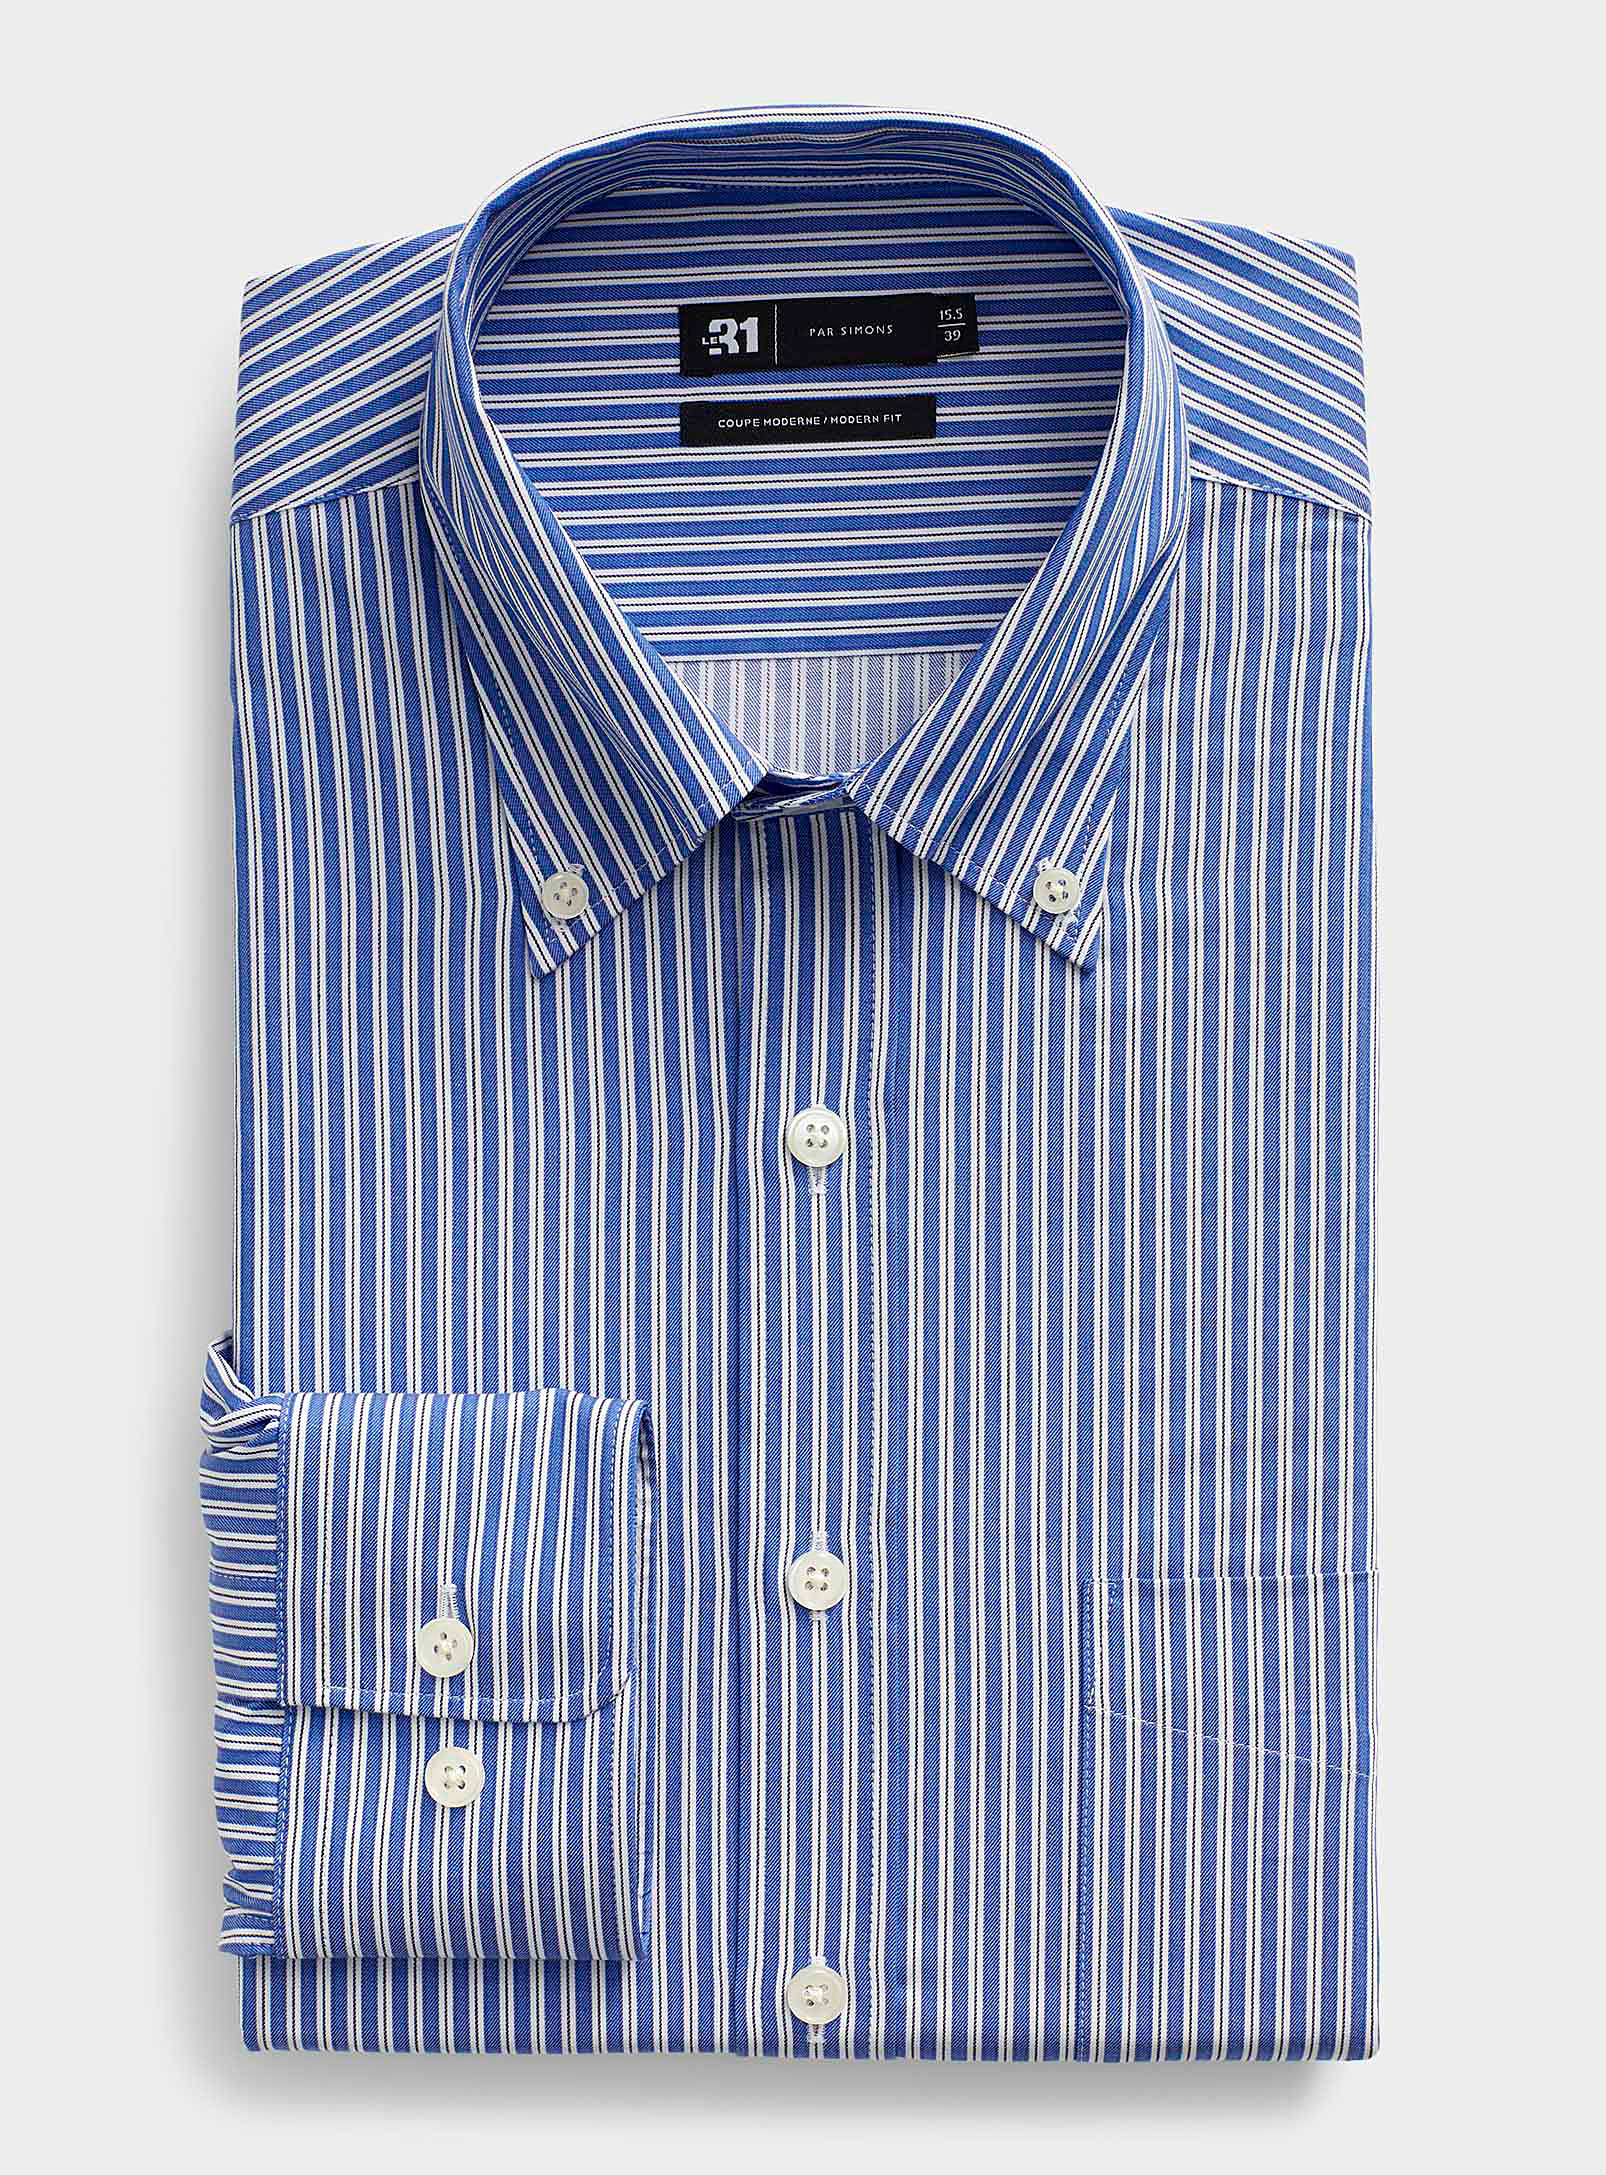 Le 31 - Men's English stripe shirt Modern fit